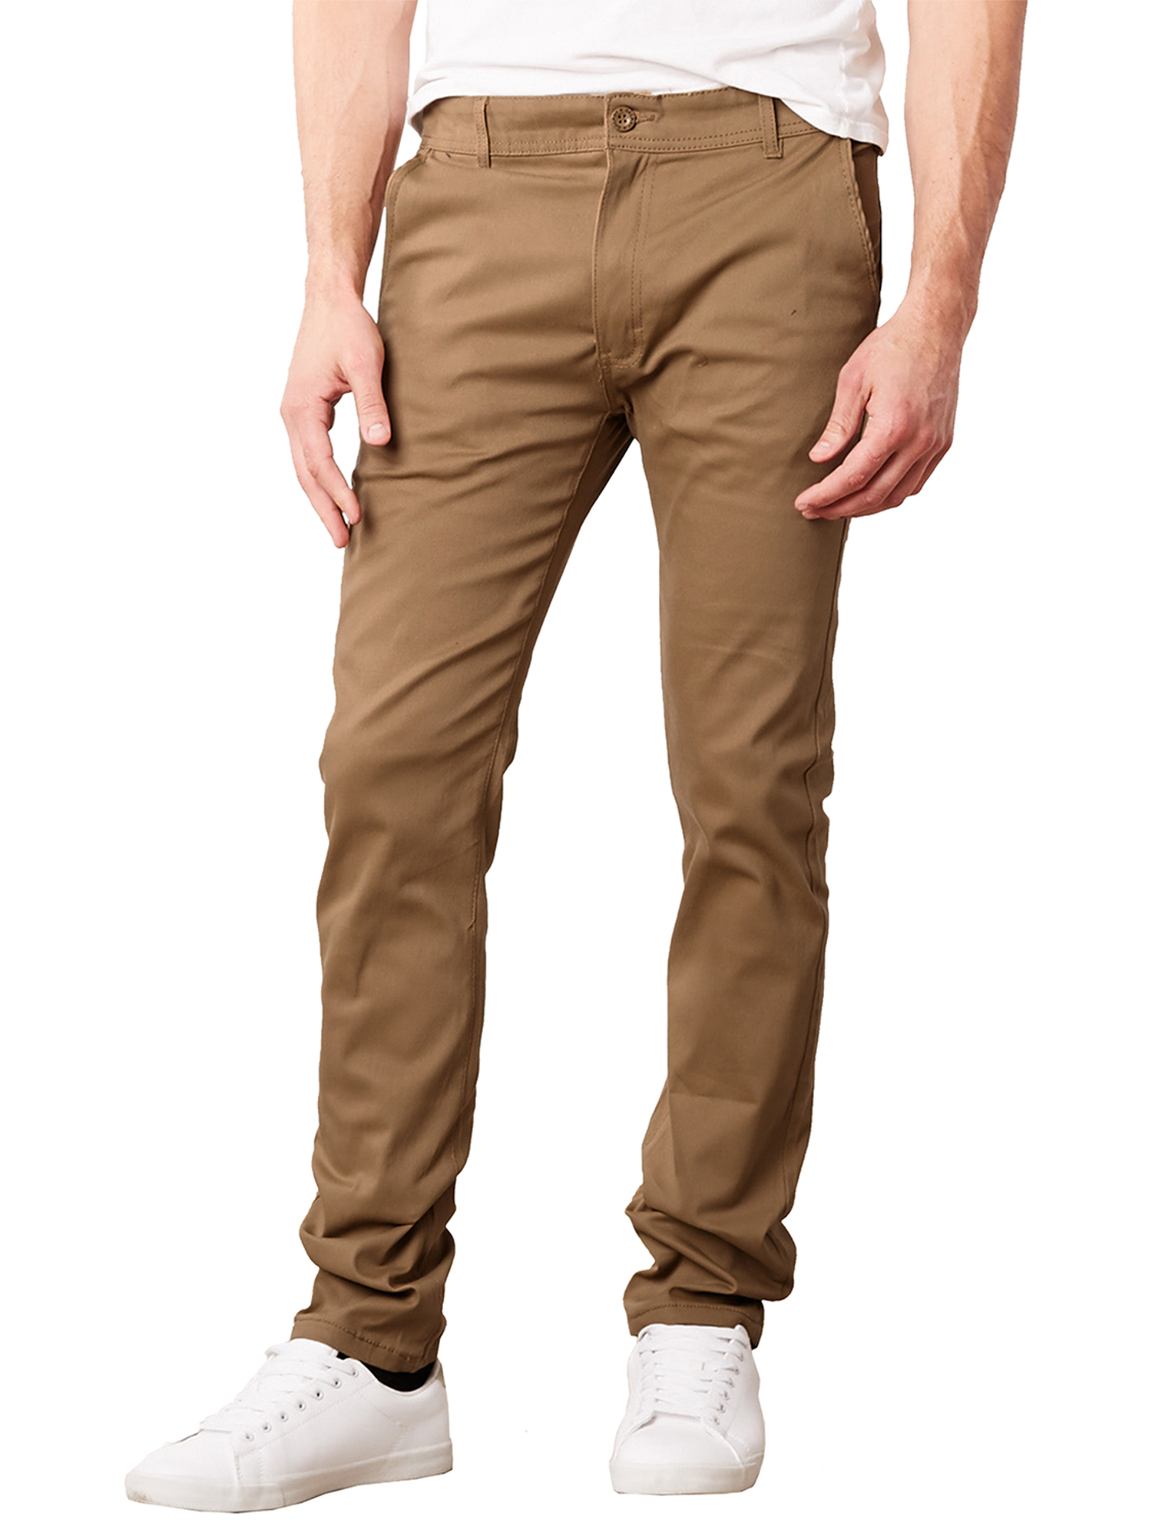 Men's Super Stretch Slim Pants - Dark Khaki, 42 x 32